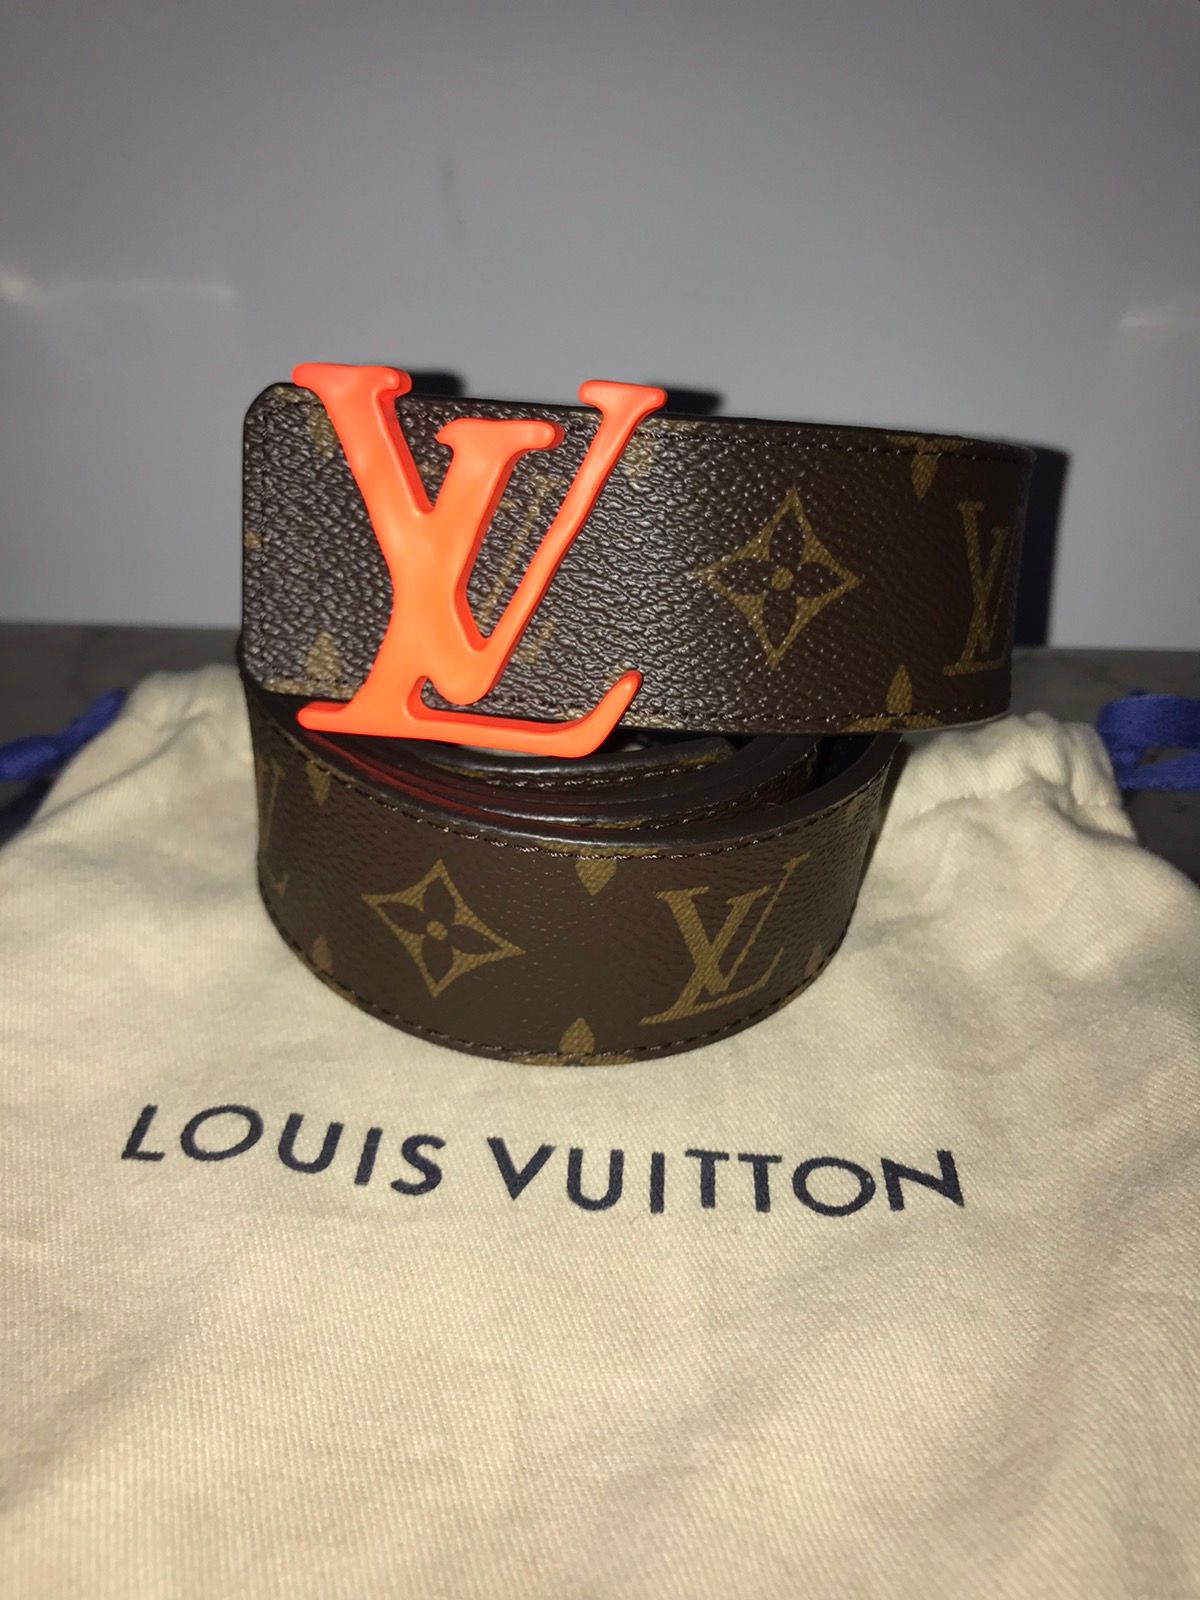 Louis Vuitton Louis Vuitton Virgil Abloh Reversible Belt